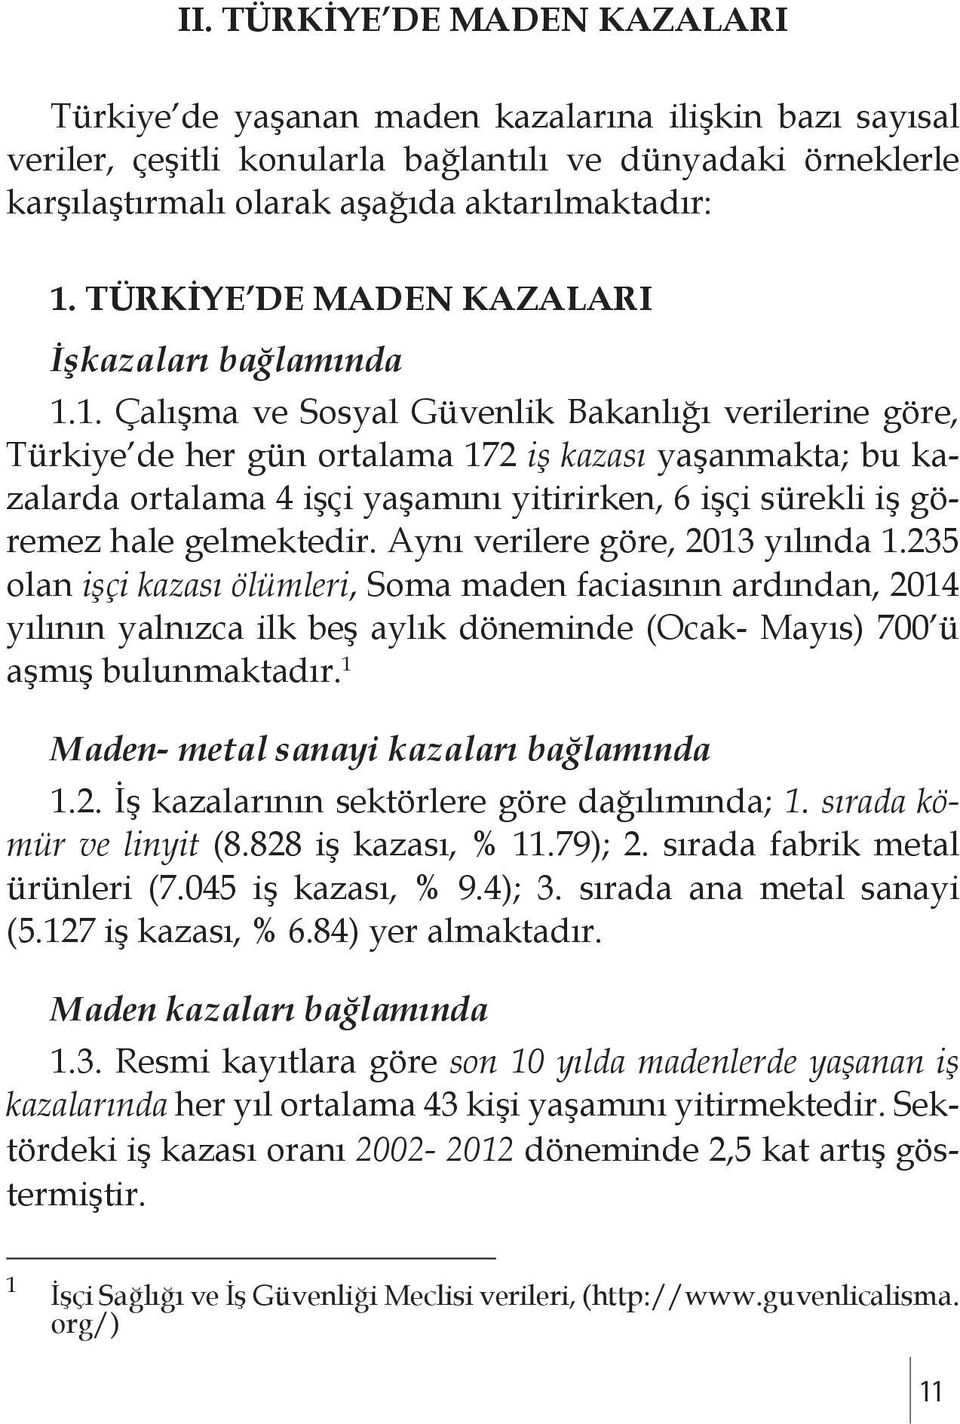 1. Çalışma ve Sosyal Güvenlik Bakanlığı verilerine göre, Türkiye de her gün ortalama 172 iş kazası yaşanmakta; bu kazalarda ortalama 4 işçi yaşamını yitirirken, 6 işçi sürekli iş göremez hale